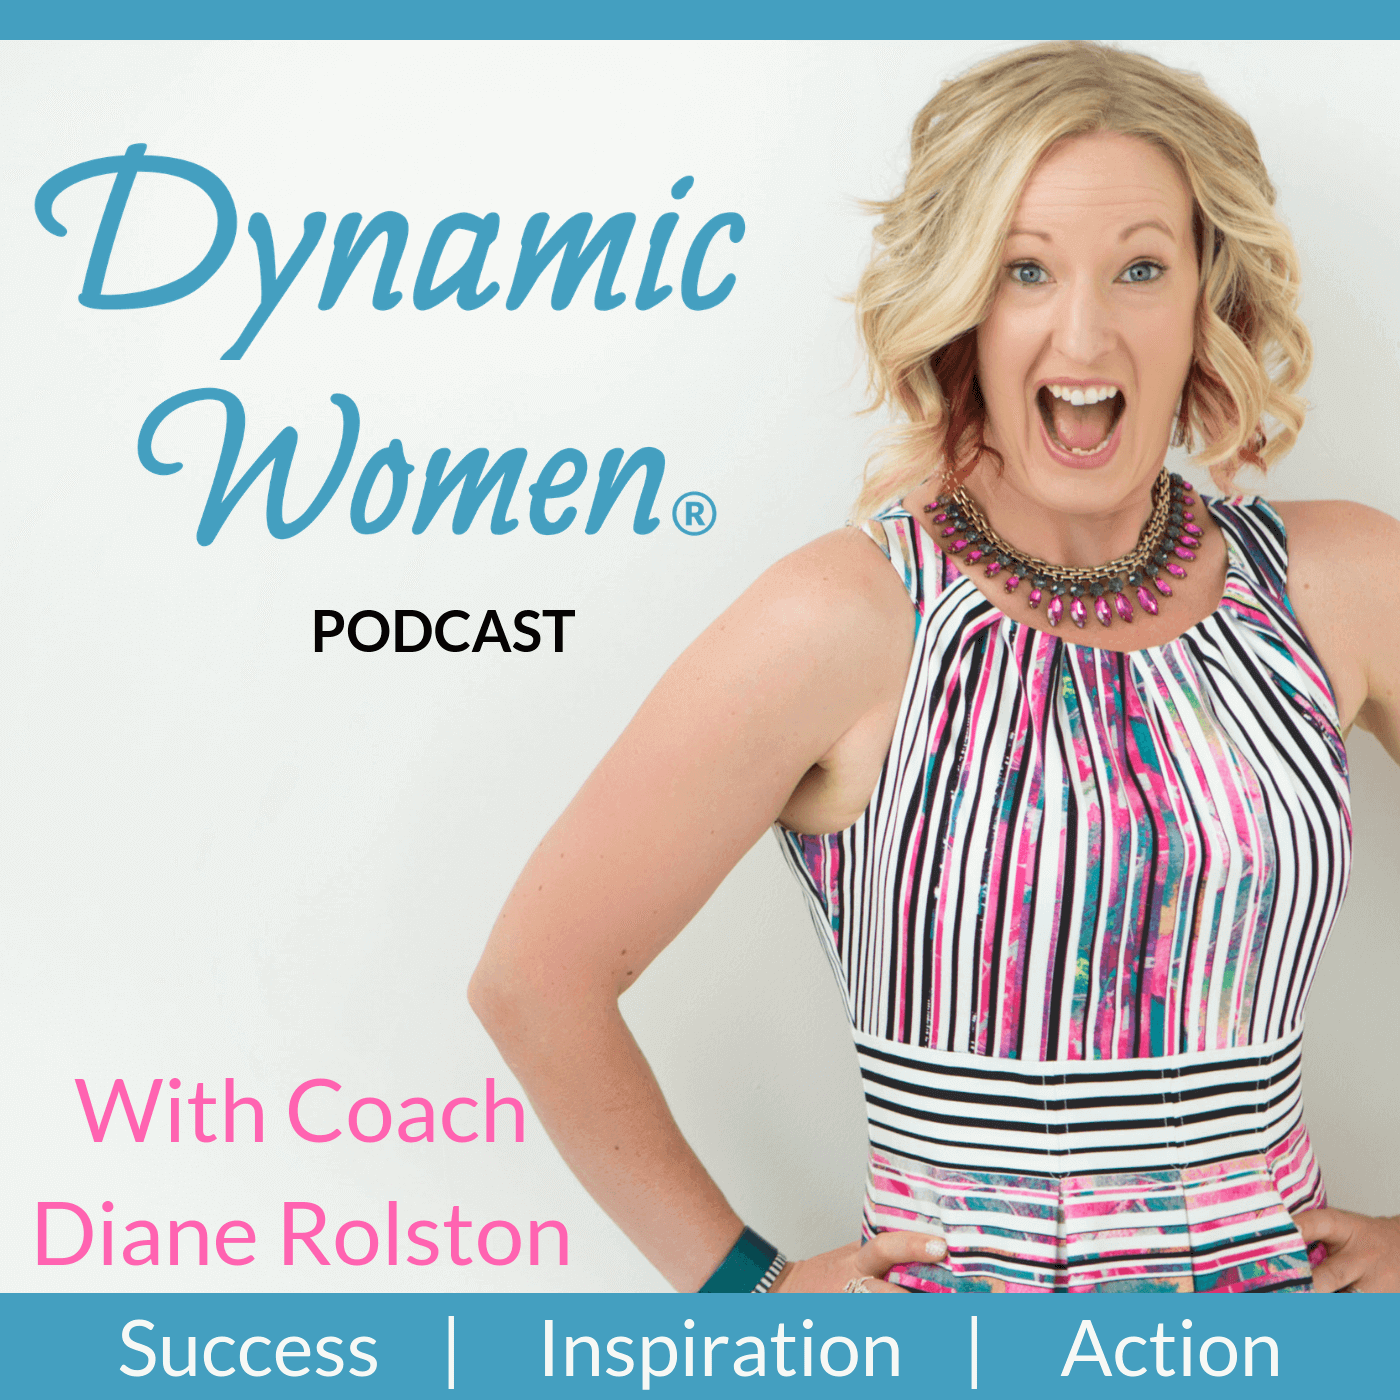 Artwork for podcast Dynamic Women®